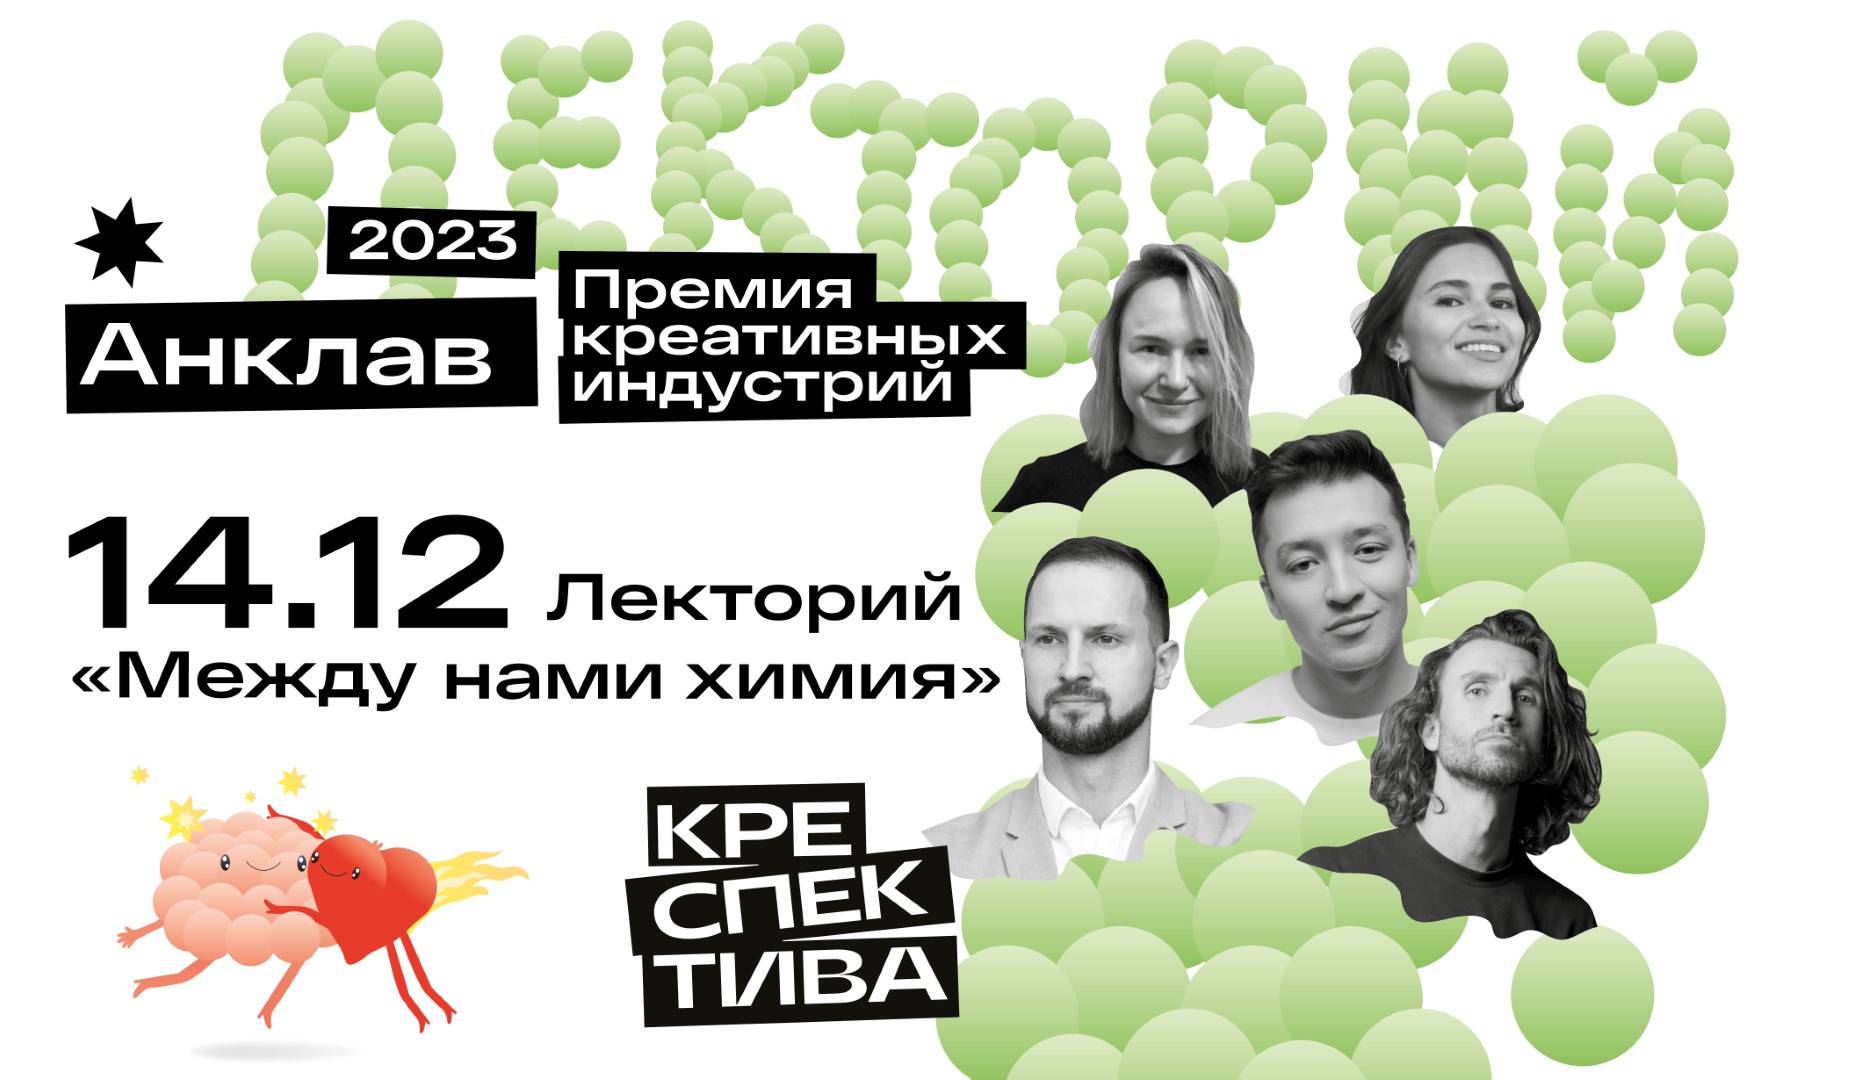 В Калининграде пройдёт лекторий премии креативных индустрий «Анклав»